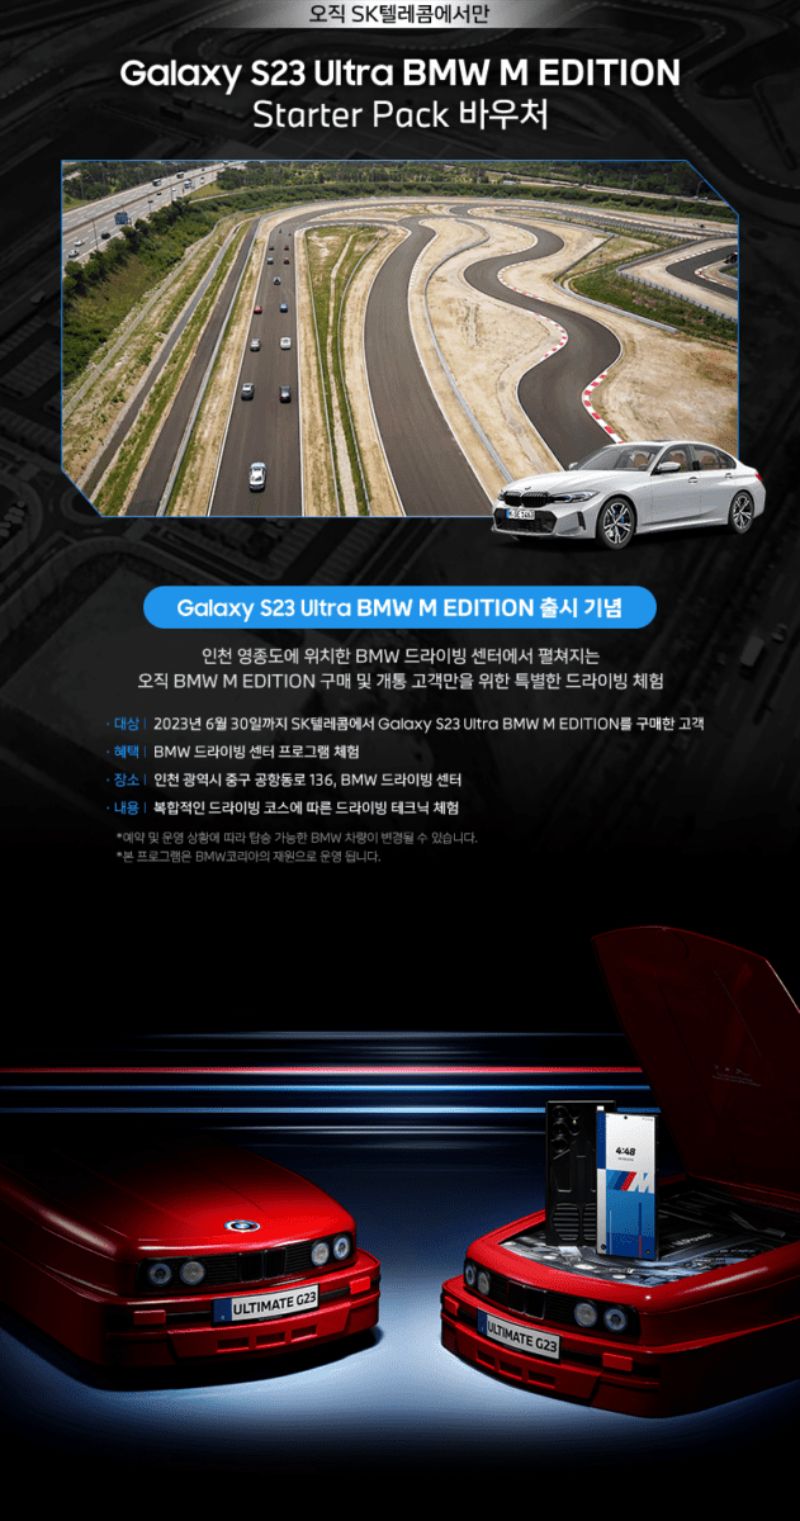 Galaxy S23 Ultra dành cho người đam mê BMW